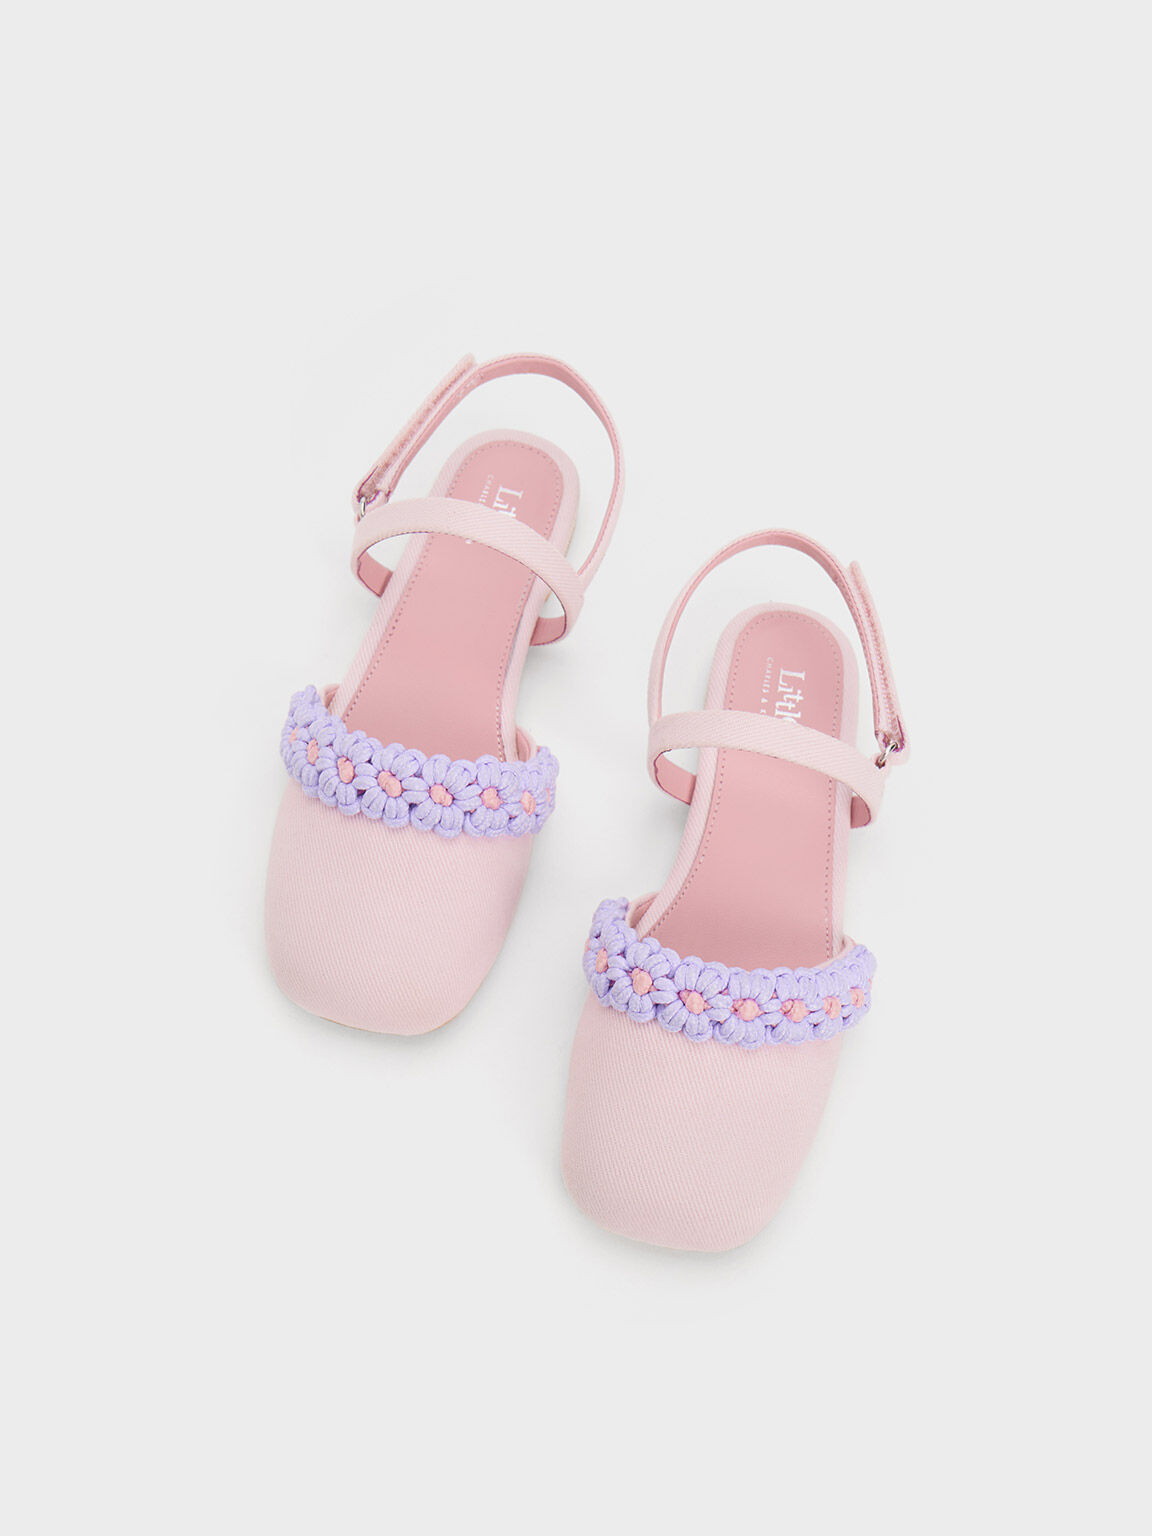 Zapatos Planos Florales de Mezclilla y Croché con Correa Trasera, Pink, hi-res